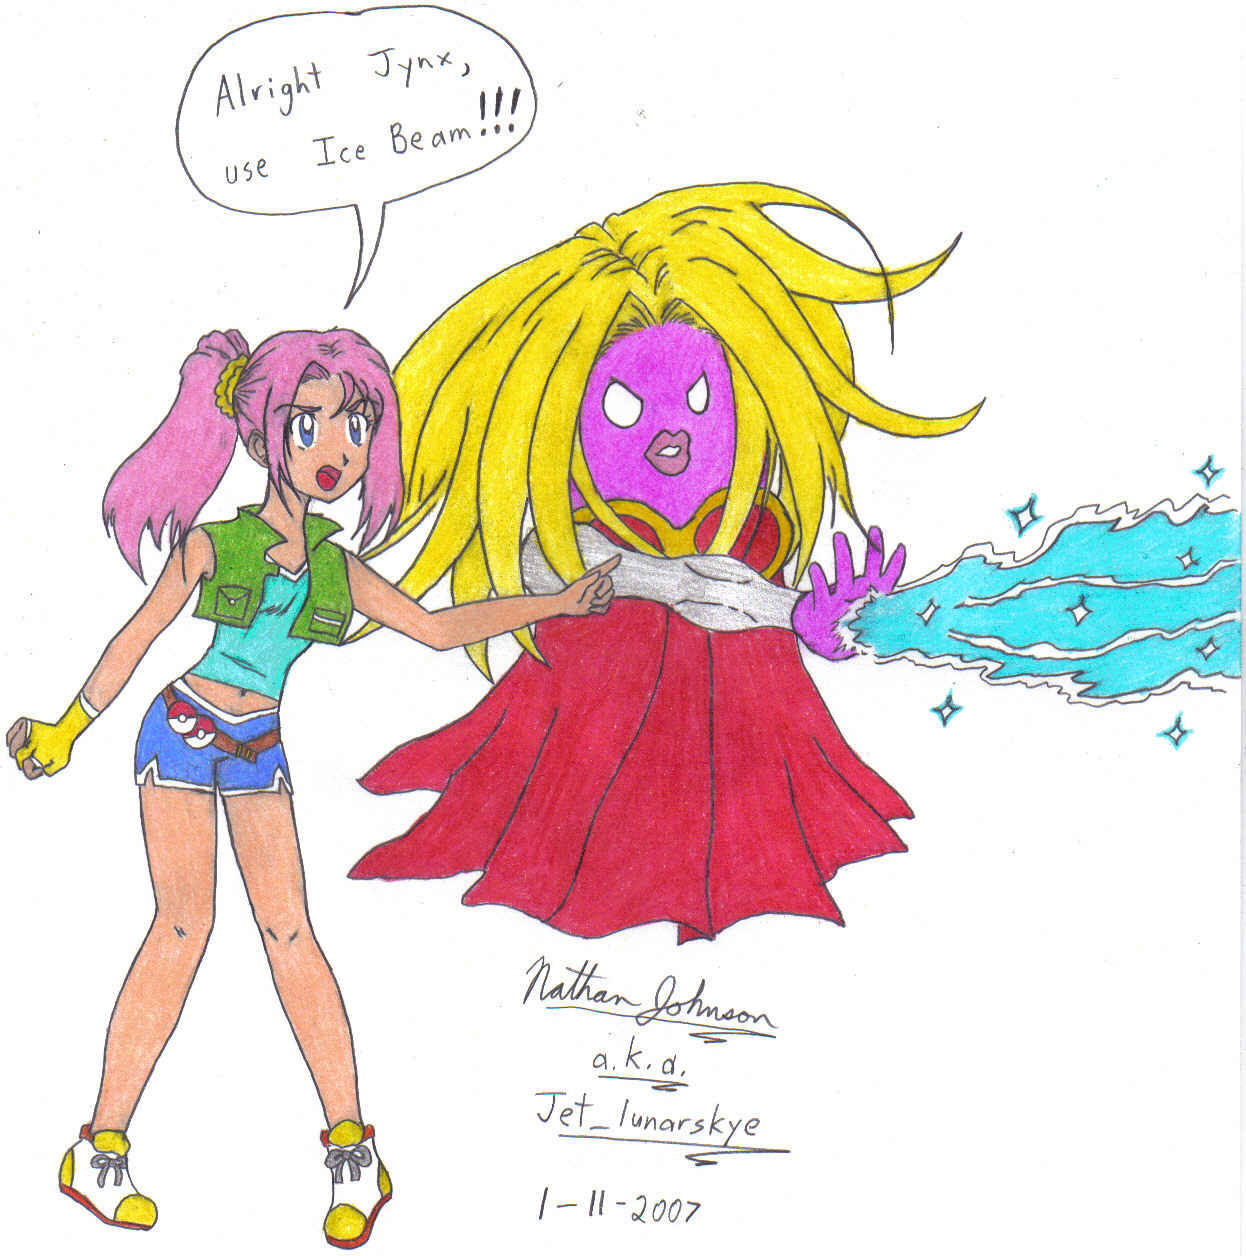 Original character Caroline and her Jynx by Jet_lunarskye